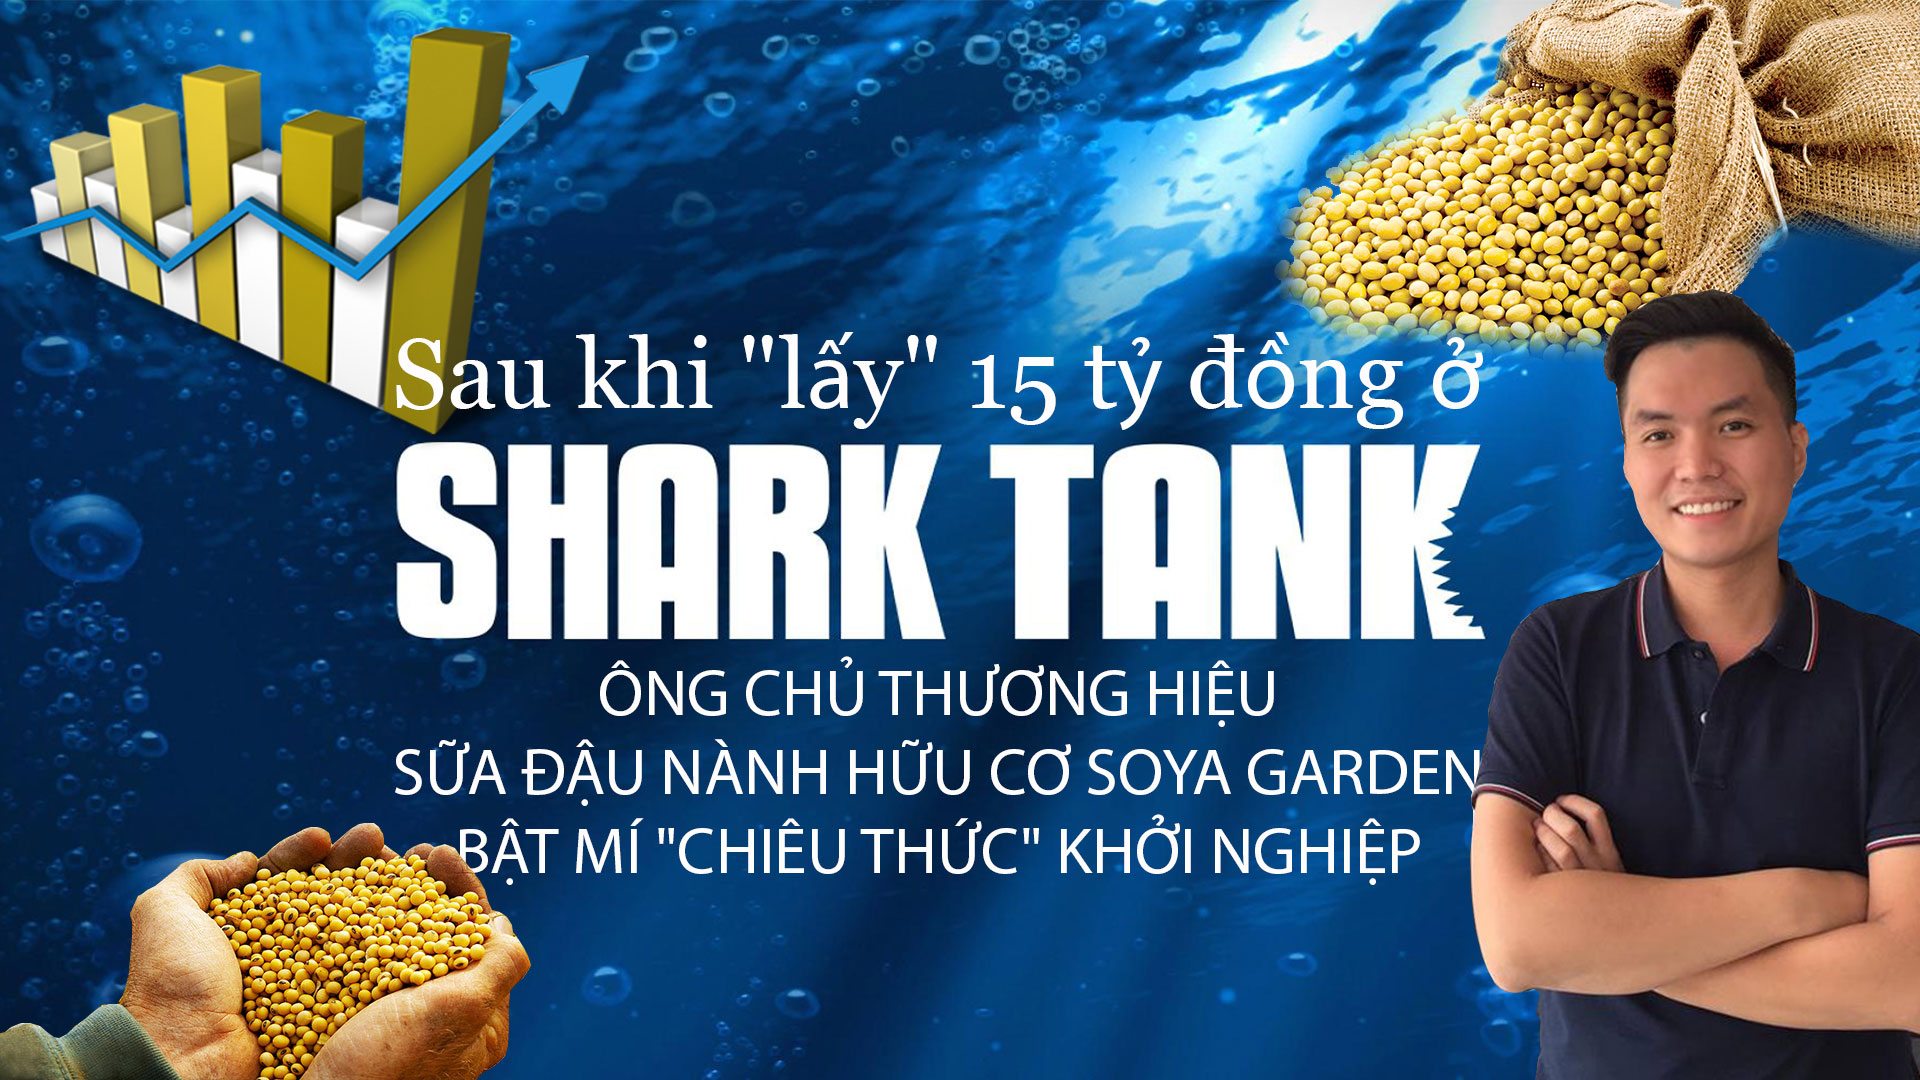 Sau khi "lấy" 15 tỷ đồng ở Shark Tank, ông chủ thương hiệu sữa đậu nành hữu cơ Soya Garden bật mí "chiêu thức" khởi nghiệp